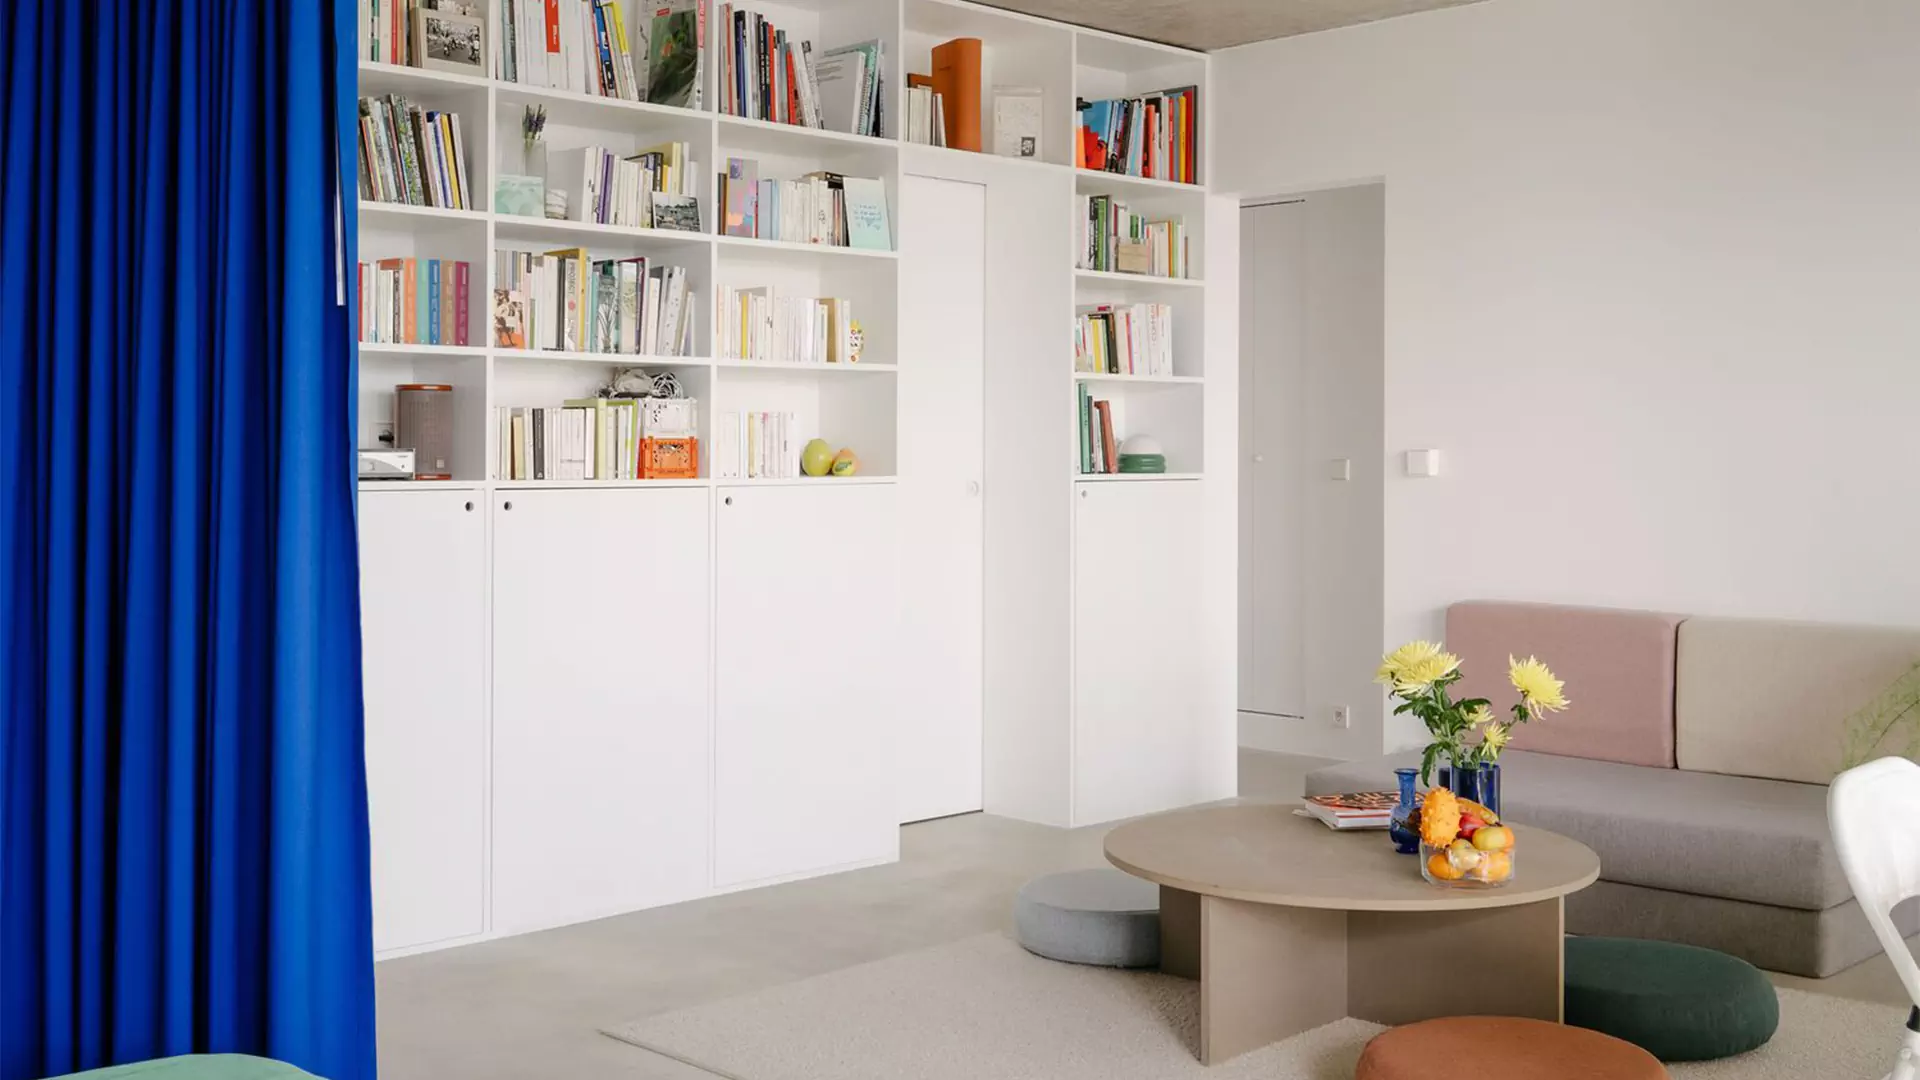 Аскетичный интерьер компактной квартиры с необычным зонированием — проект студии Hyper и Саймона Генри